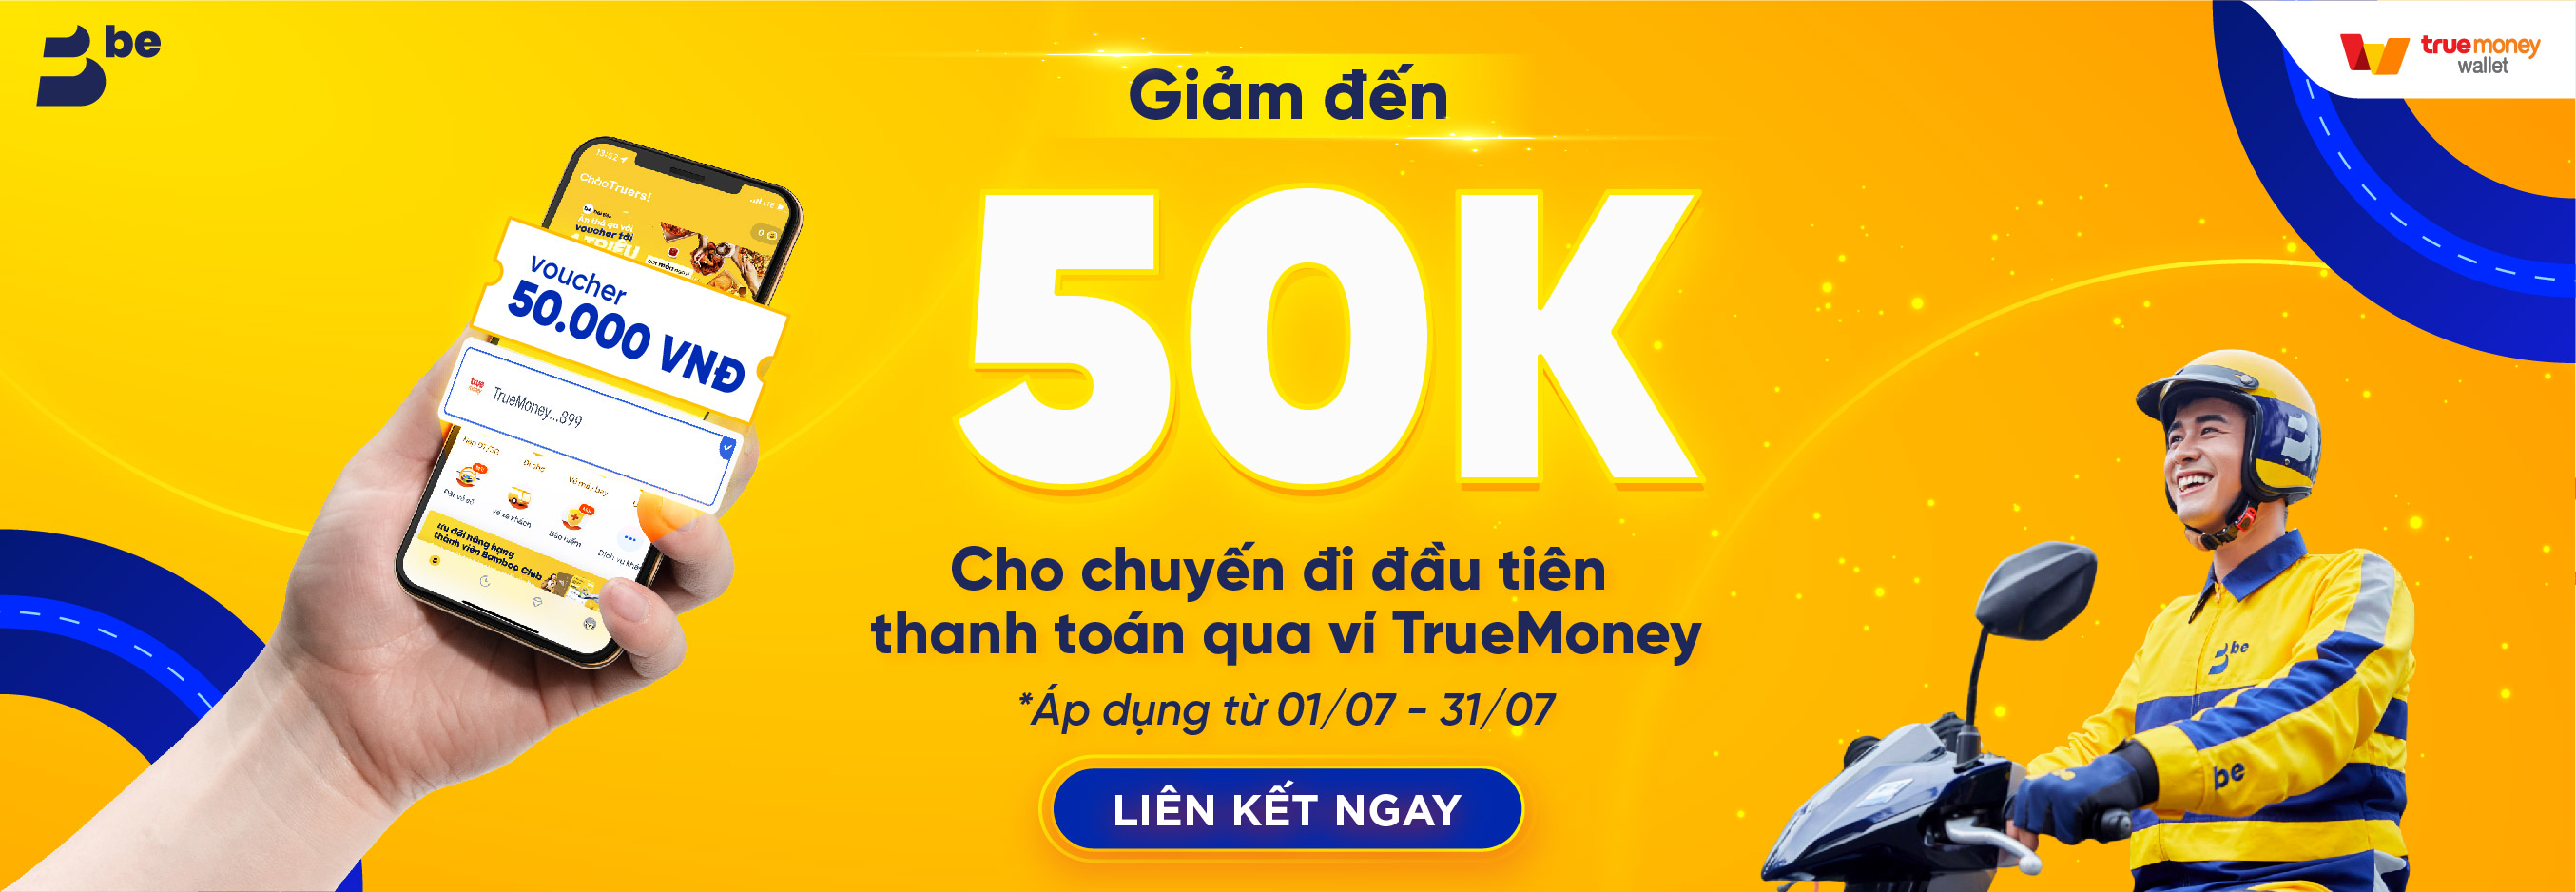 TRUEMONEY TẶNG 50K ĐẶT CHUYẾN BE ĐẦU TIÊN